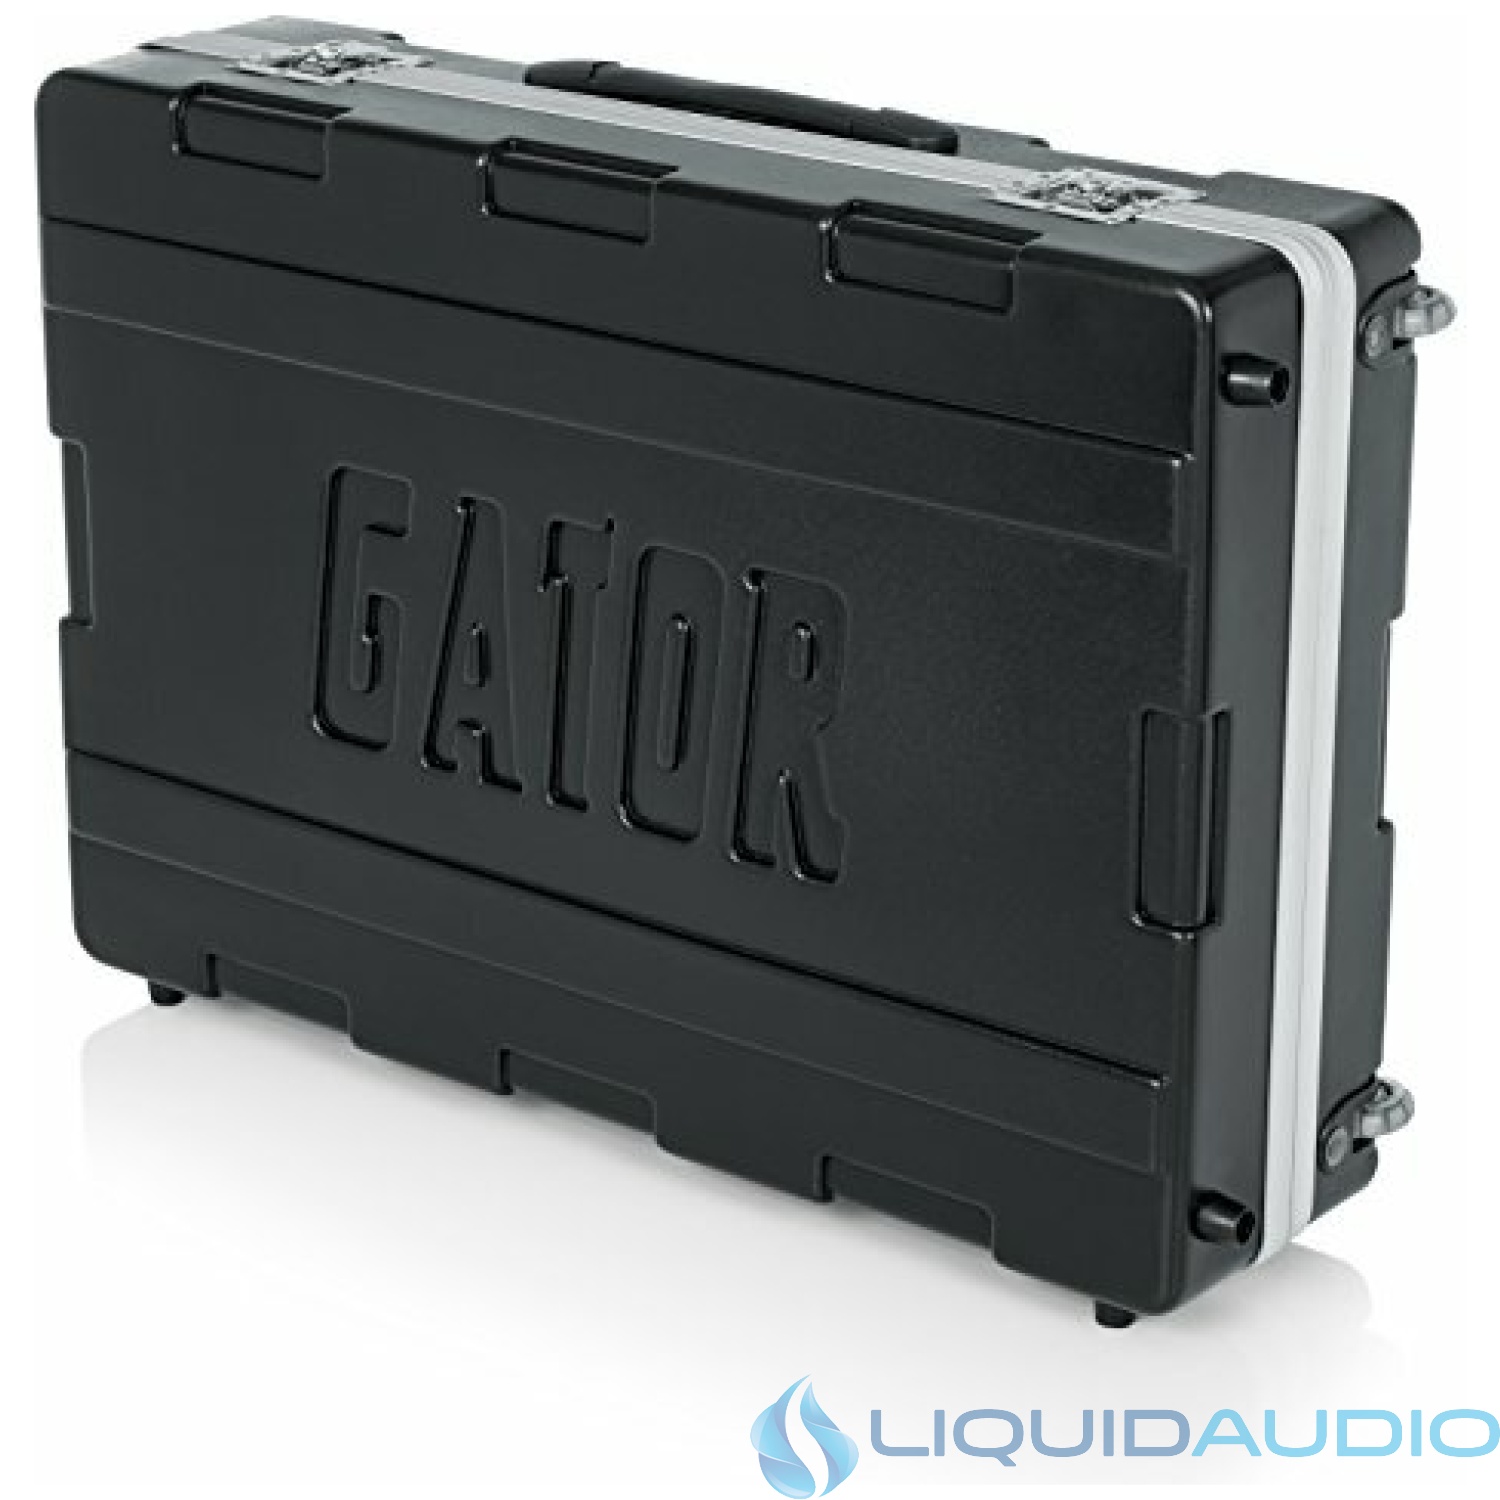 Gator 20 x 30 Inches ATA Mixer Case (G-MIX 20X30)